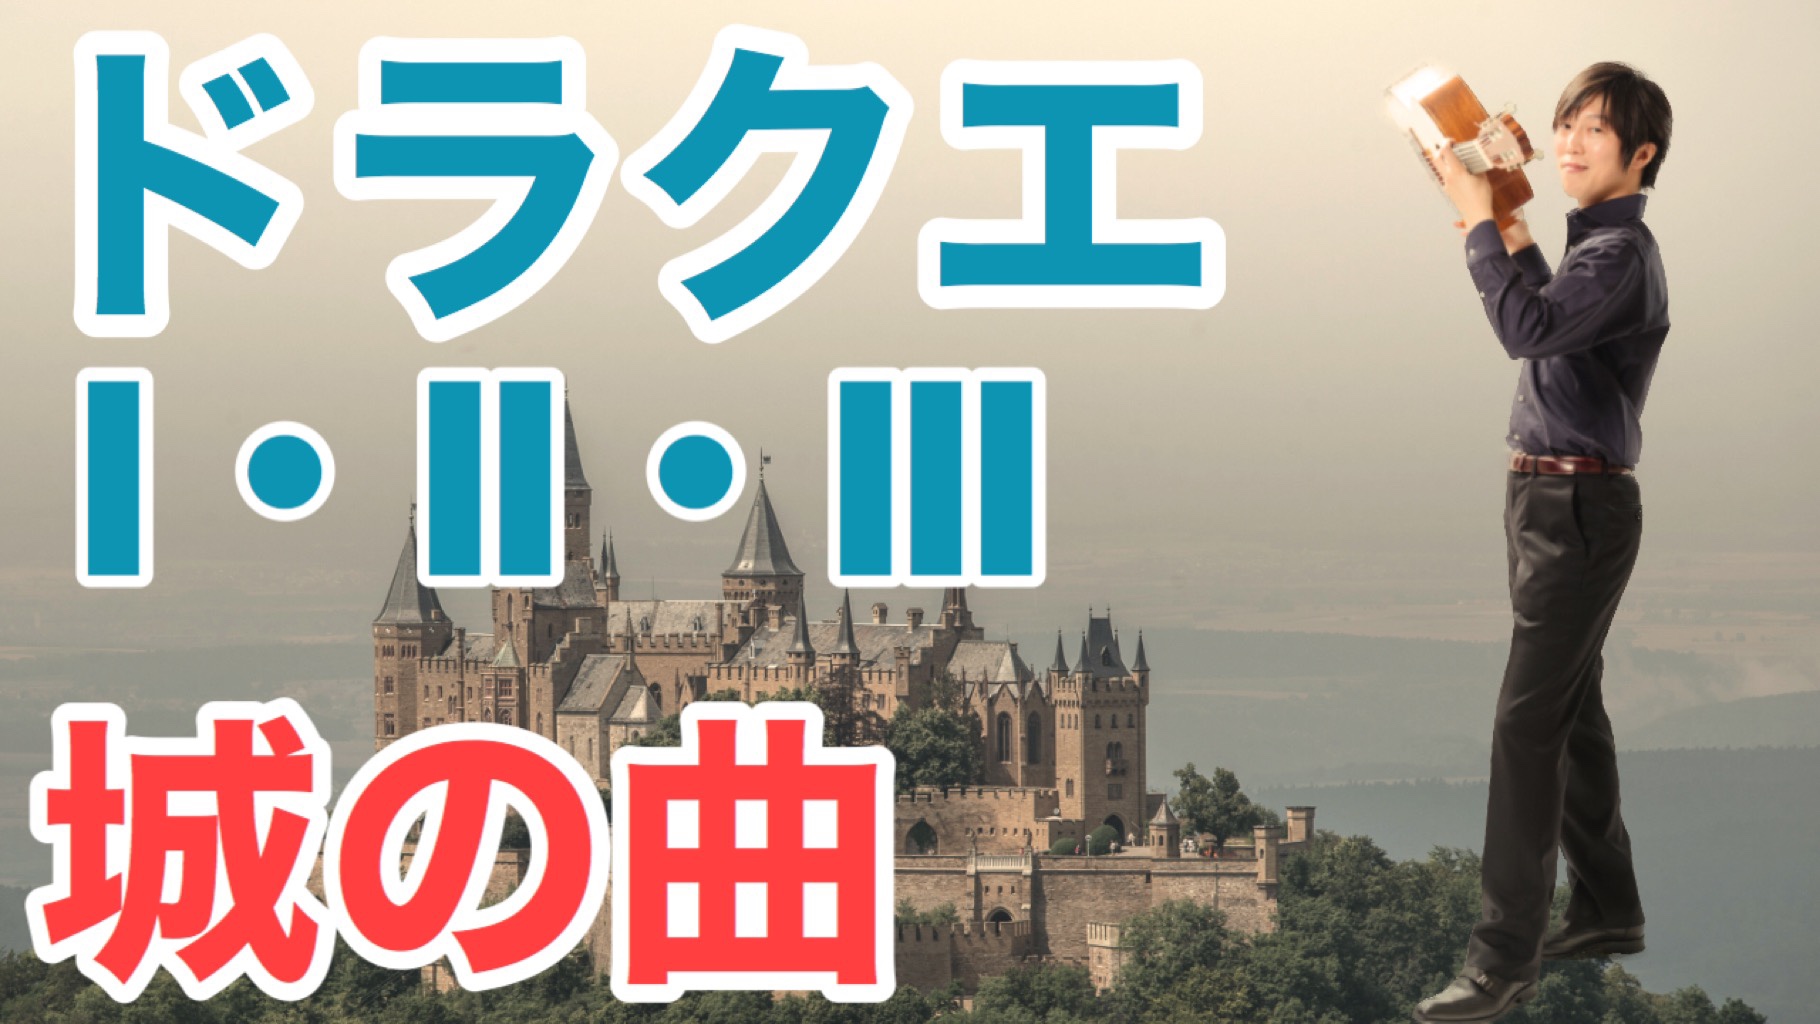 Dragon Quest ドラクエi Ii Iii のお城のテーマ曲 クラシックギターソロ Hideyuki Arano Official Web Site